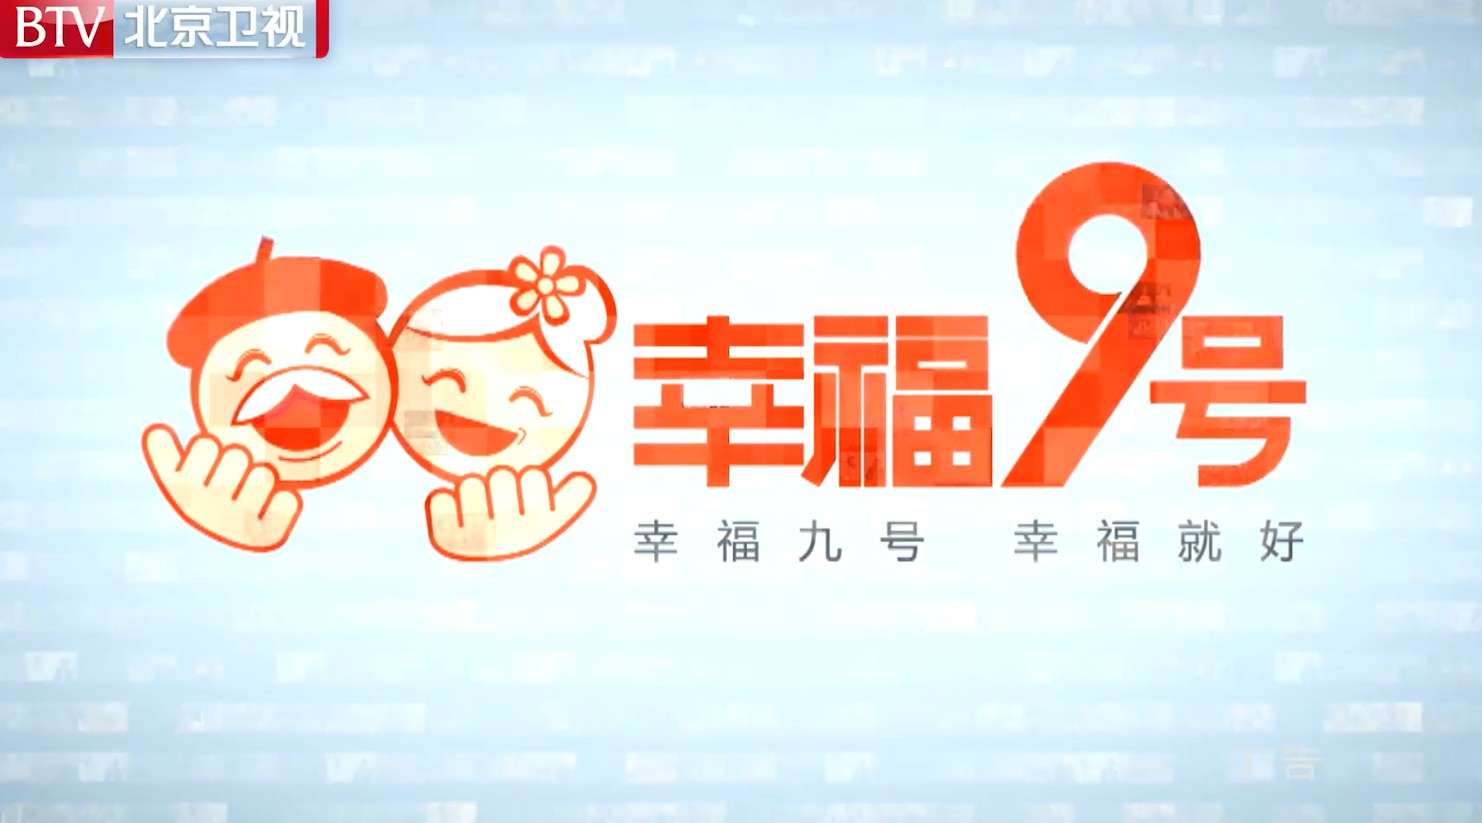 【广告】北京卫视幸福九号养老社区电视台广告